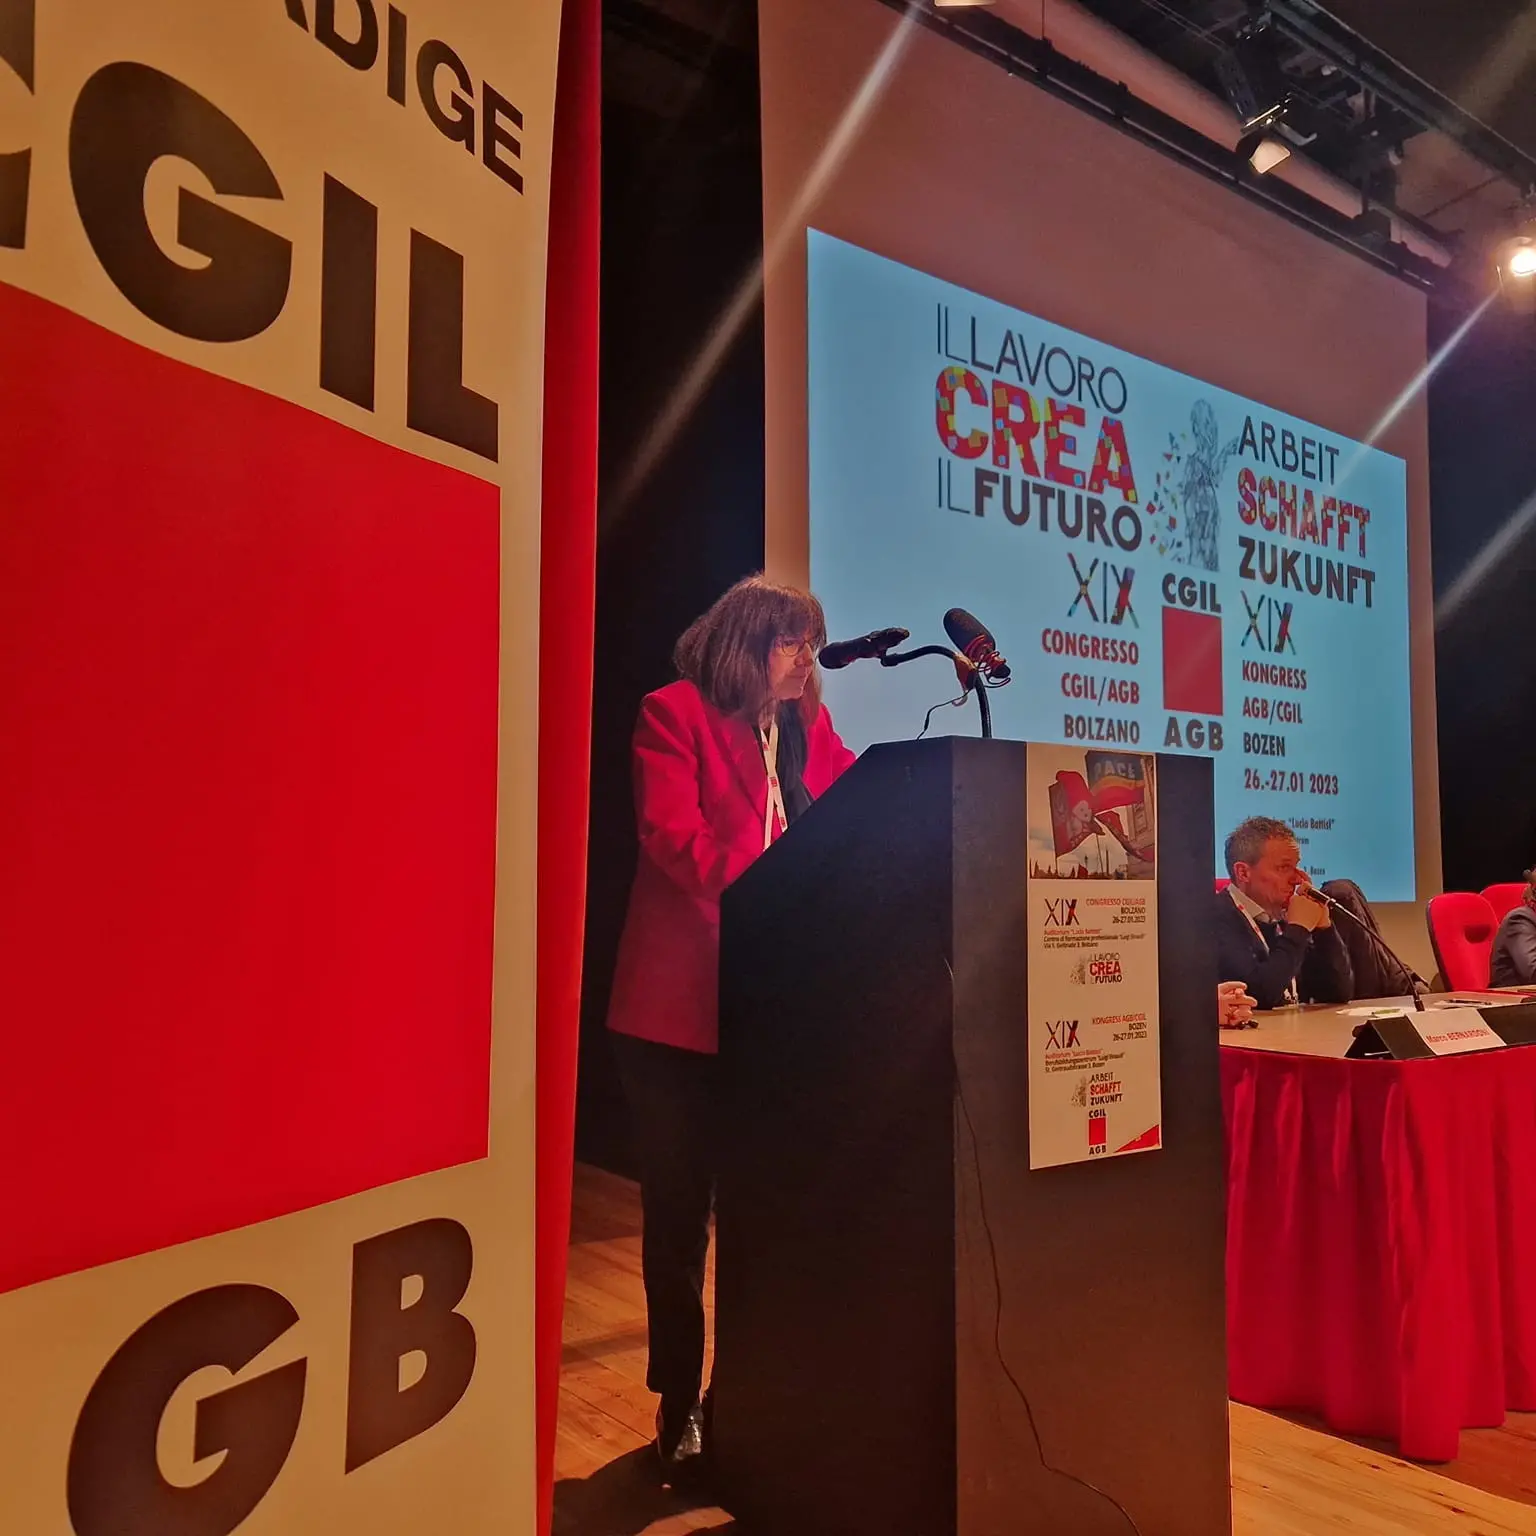 Al congresso della Cgil/Agb, Cristina Masera riconfermata segretaria